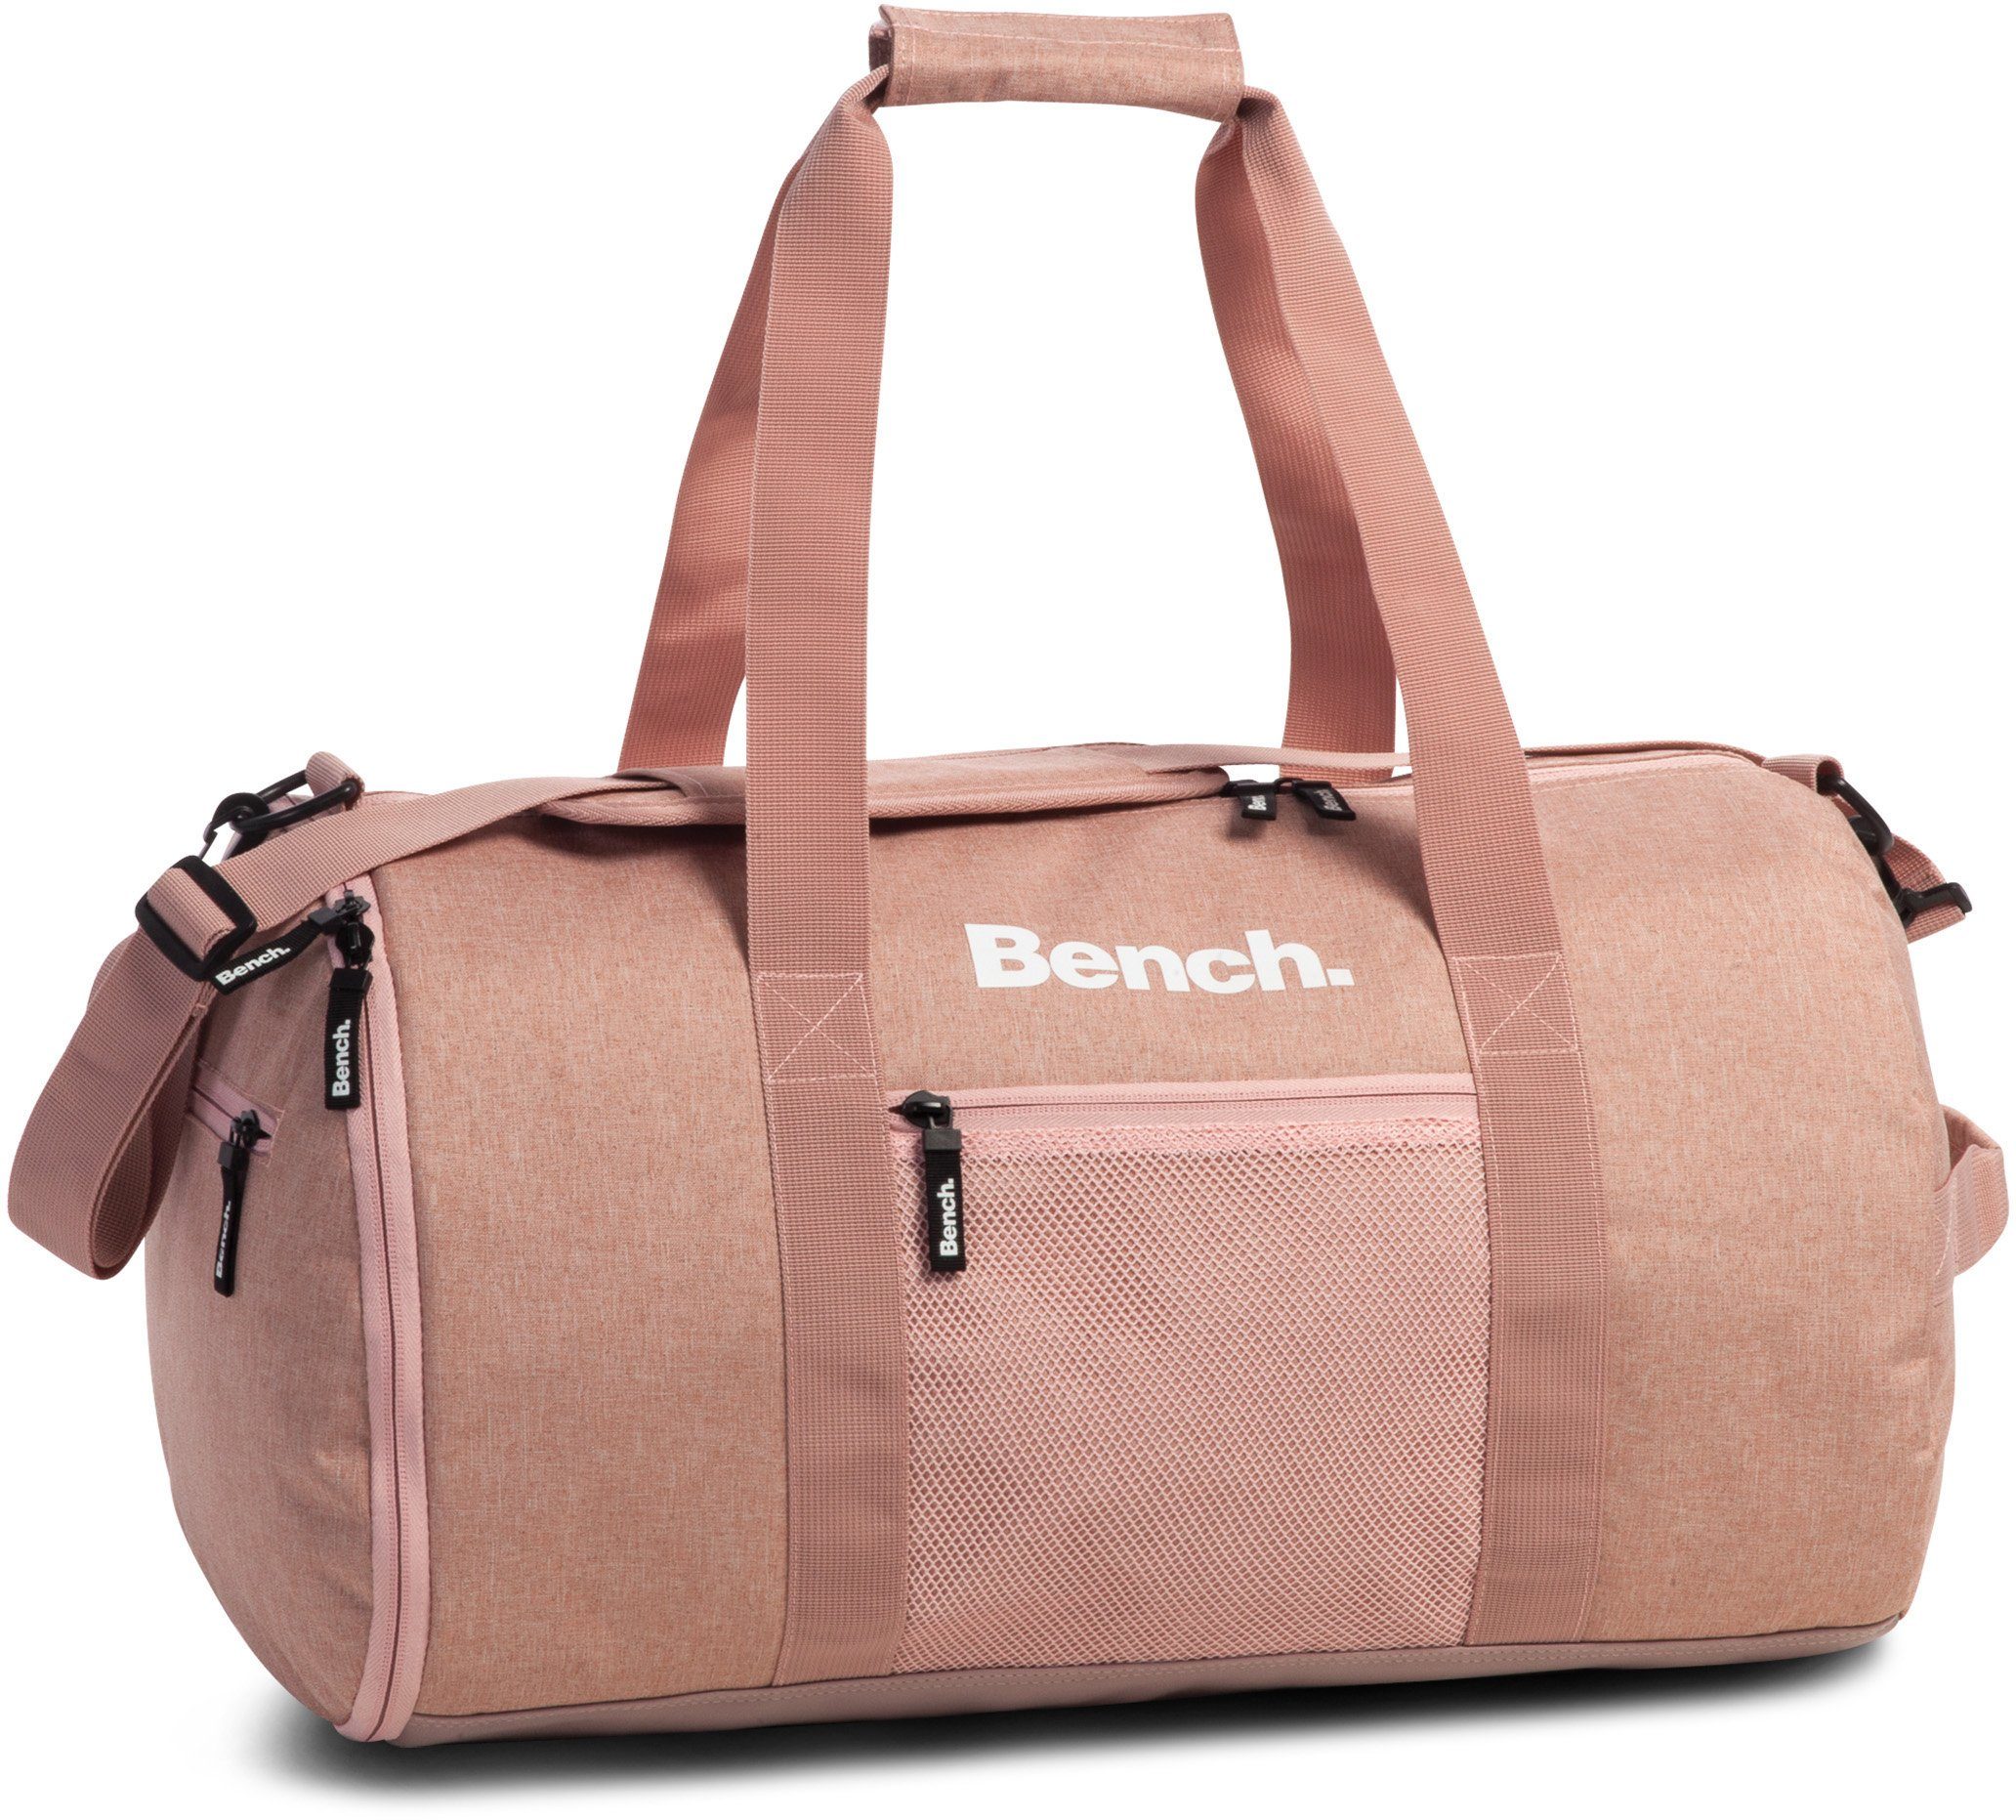 Bench. Reisetasche Sporttasche, 30 L rosa-rot